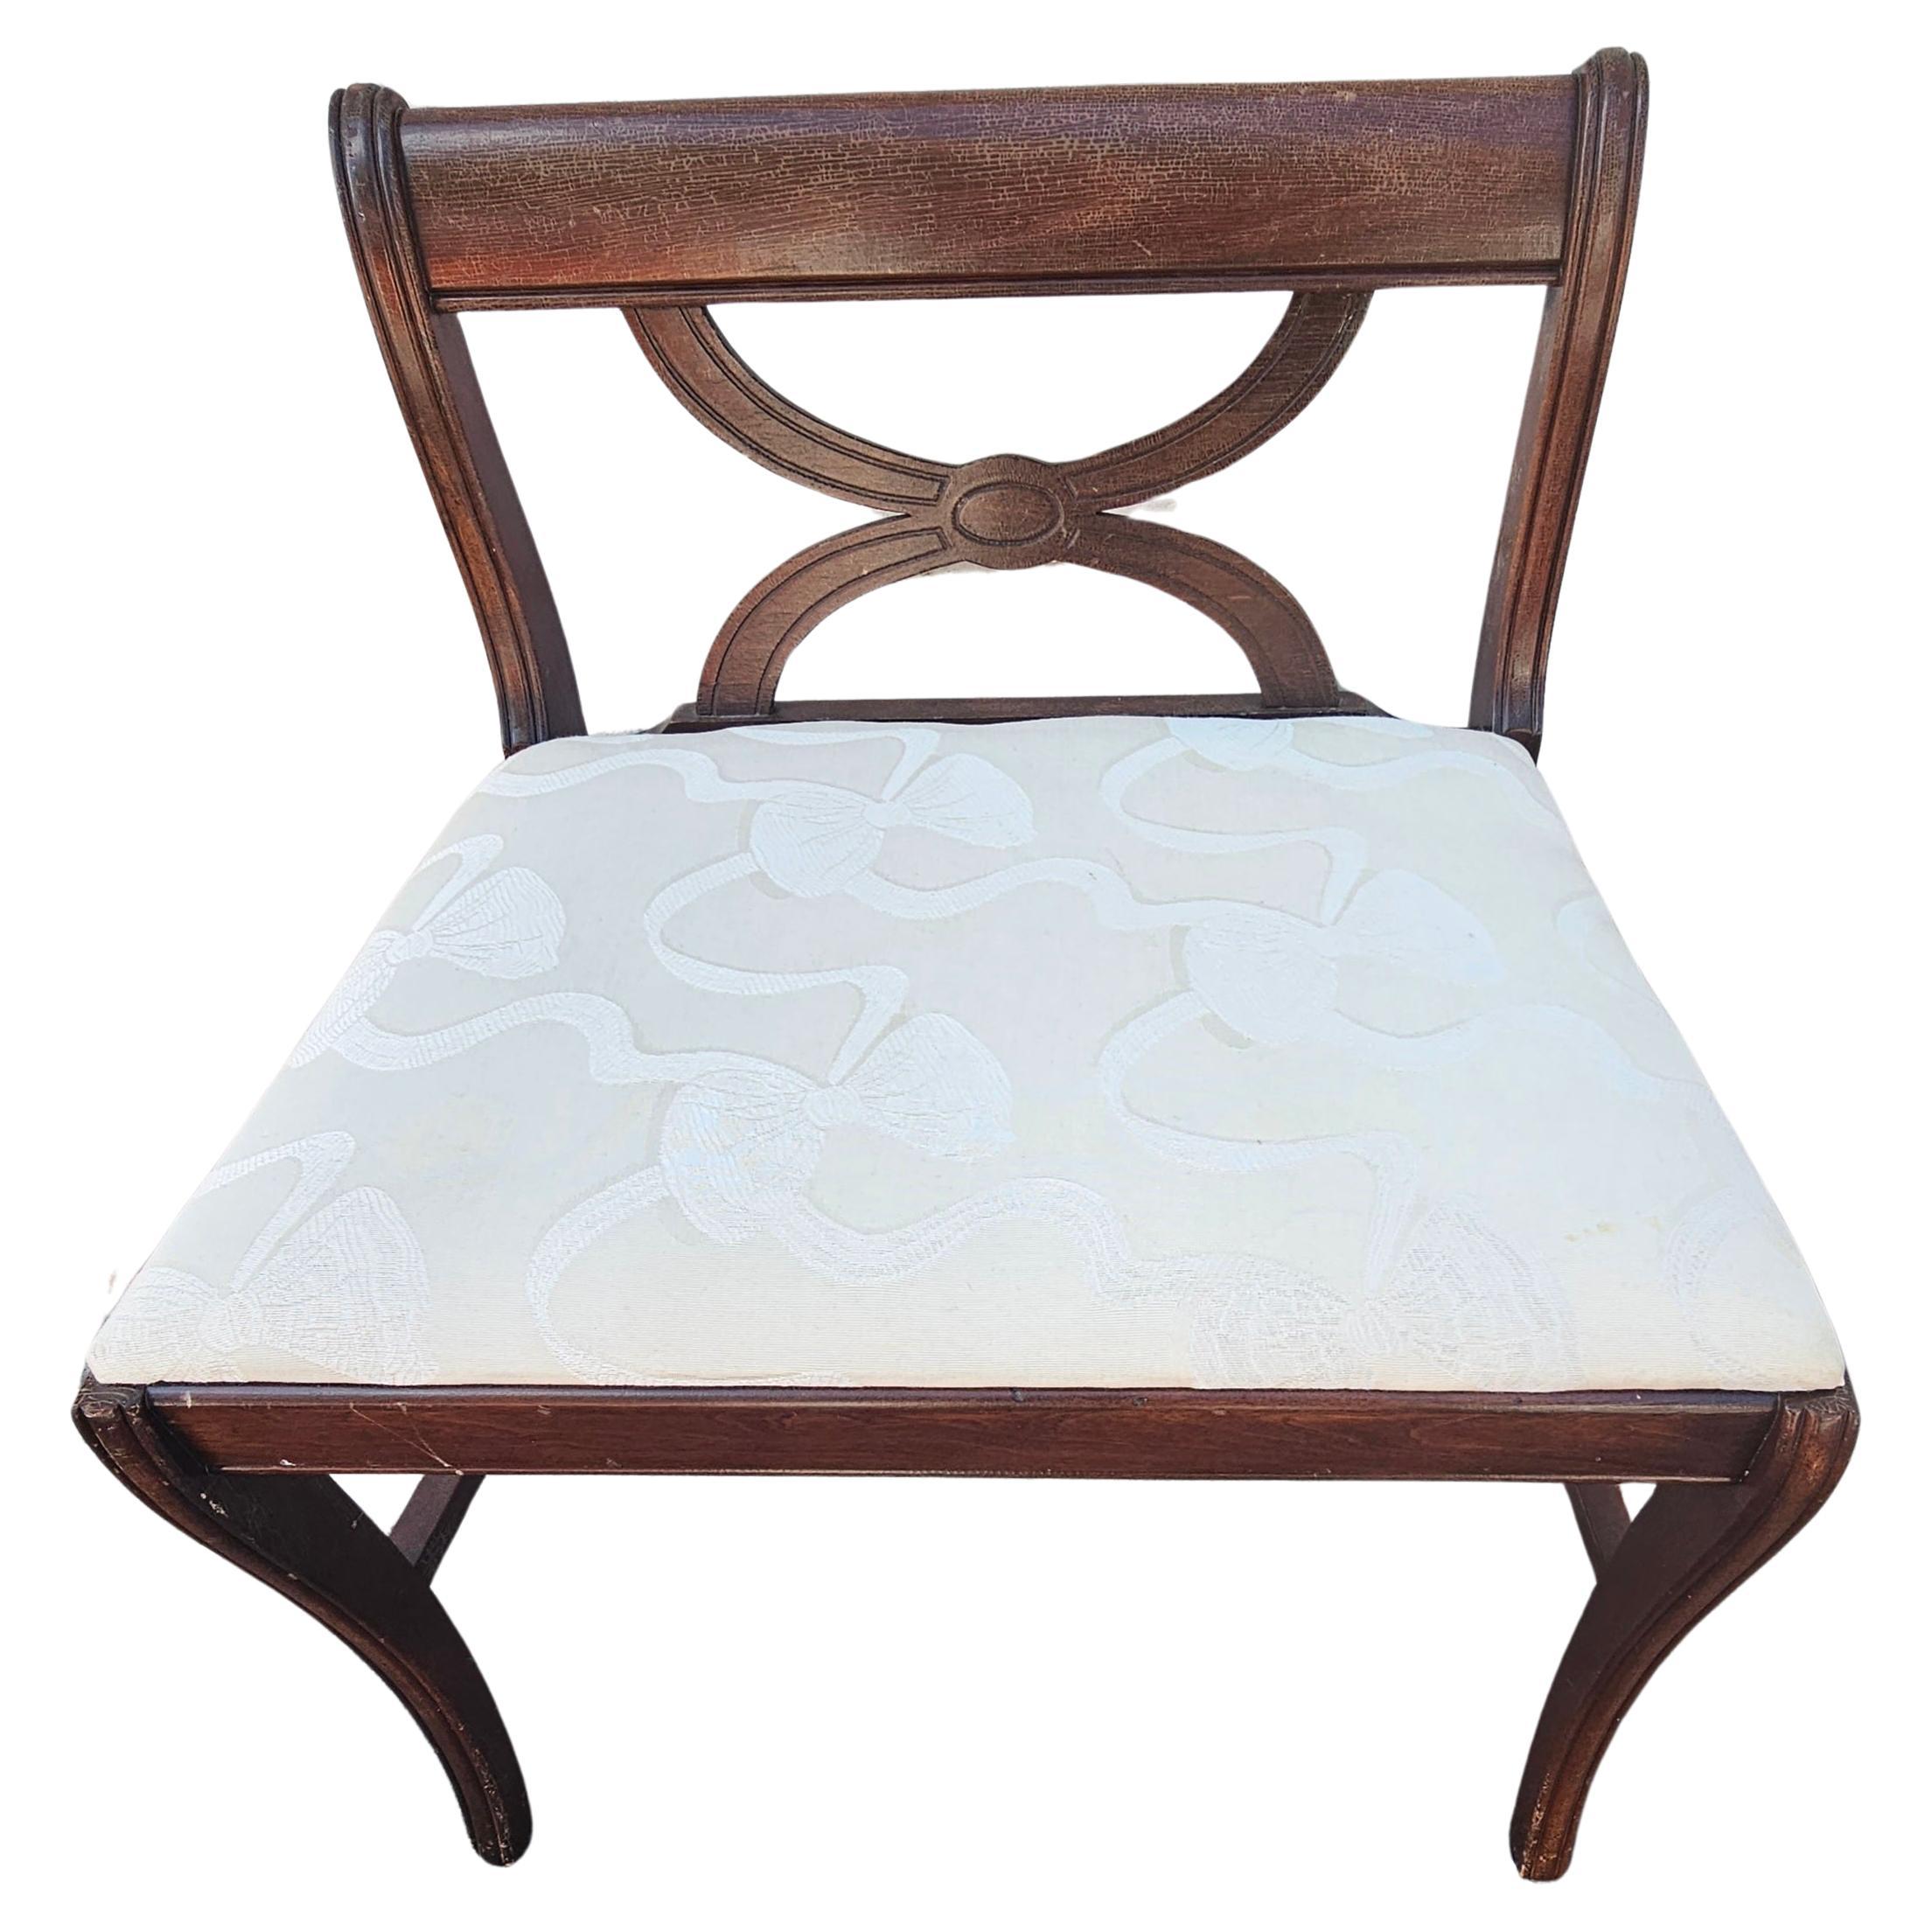 Ein Mid-Century Georgian Style Mahagoni und frisch reupolstered Seat Vanity Bench. Cremige Polsterung sehr sauber ohne Flecken.
Maße: 22,25